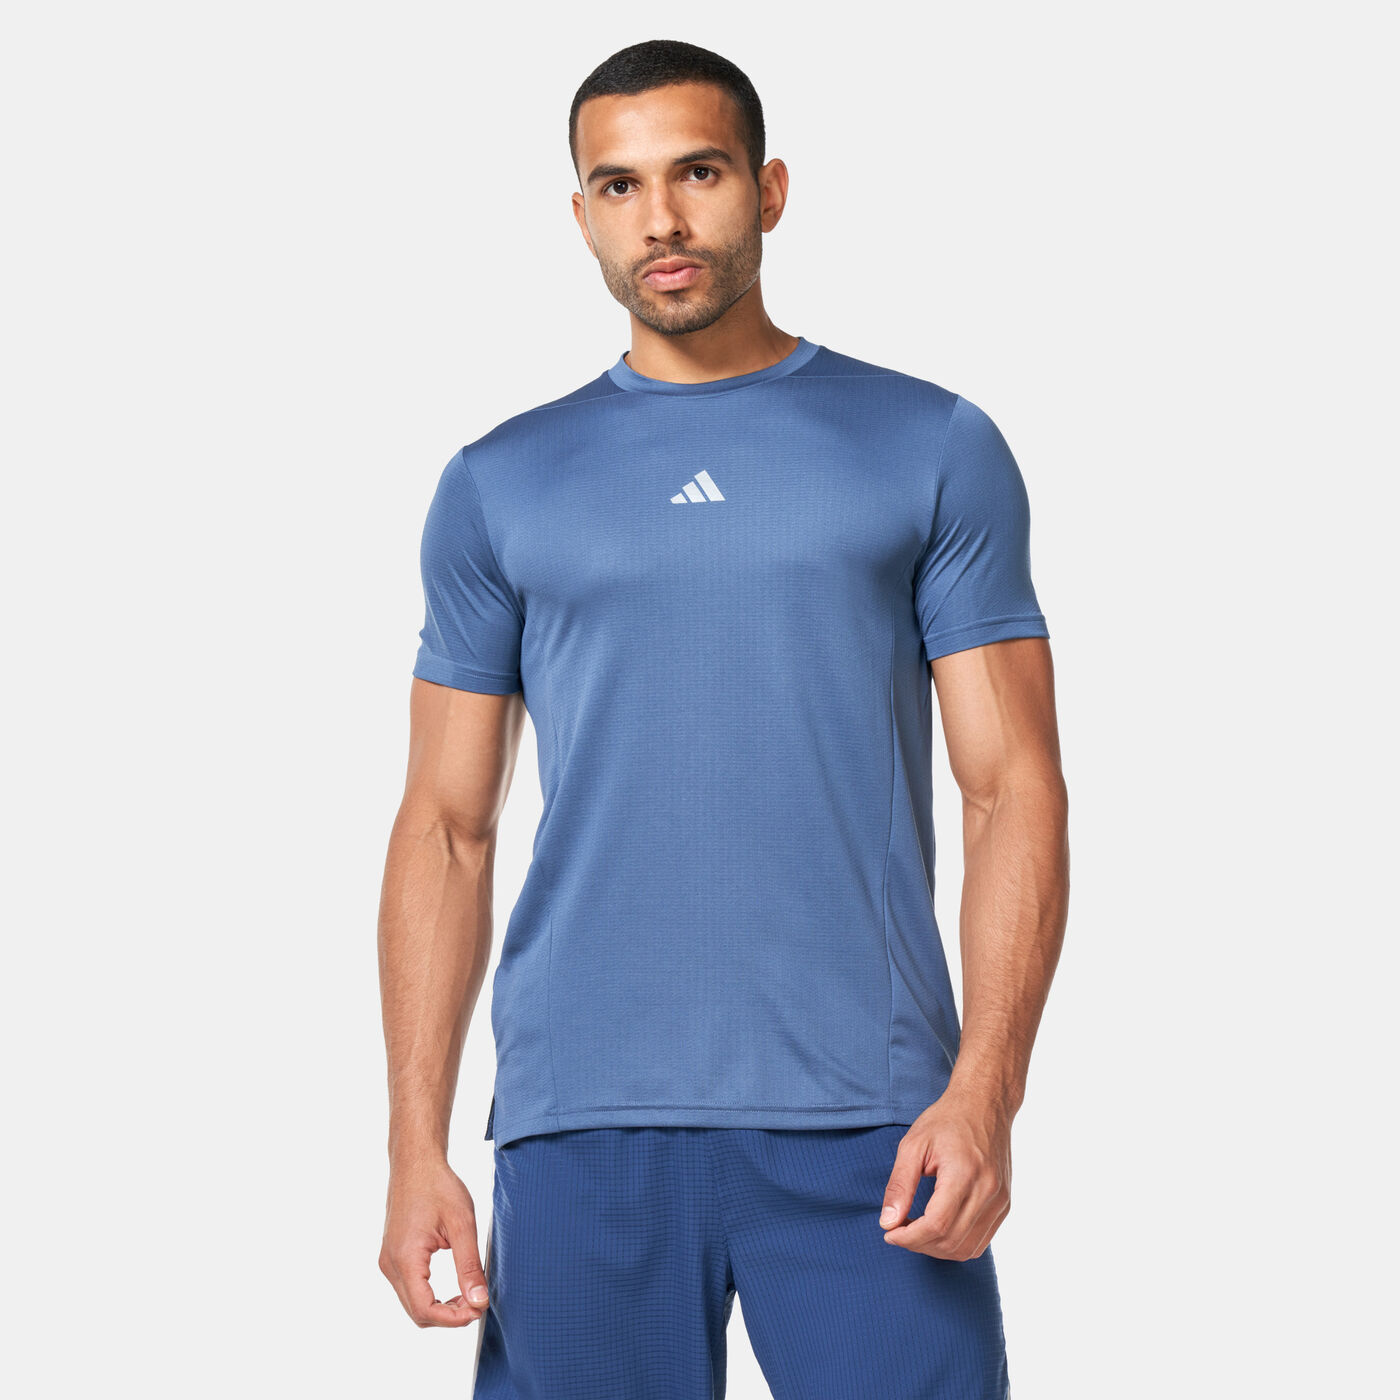 Men's Designed For Training T-Shirt